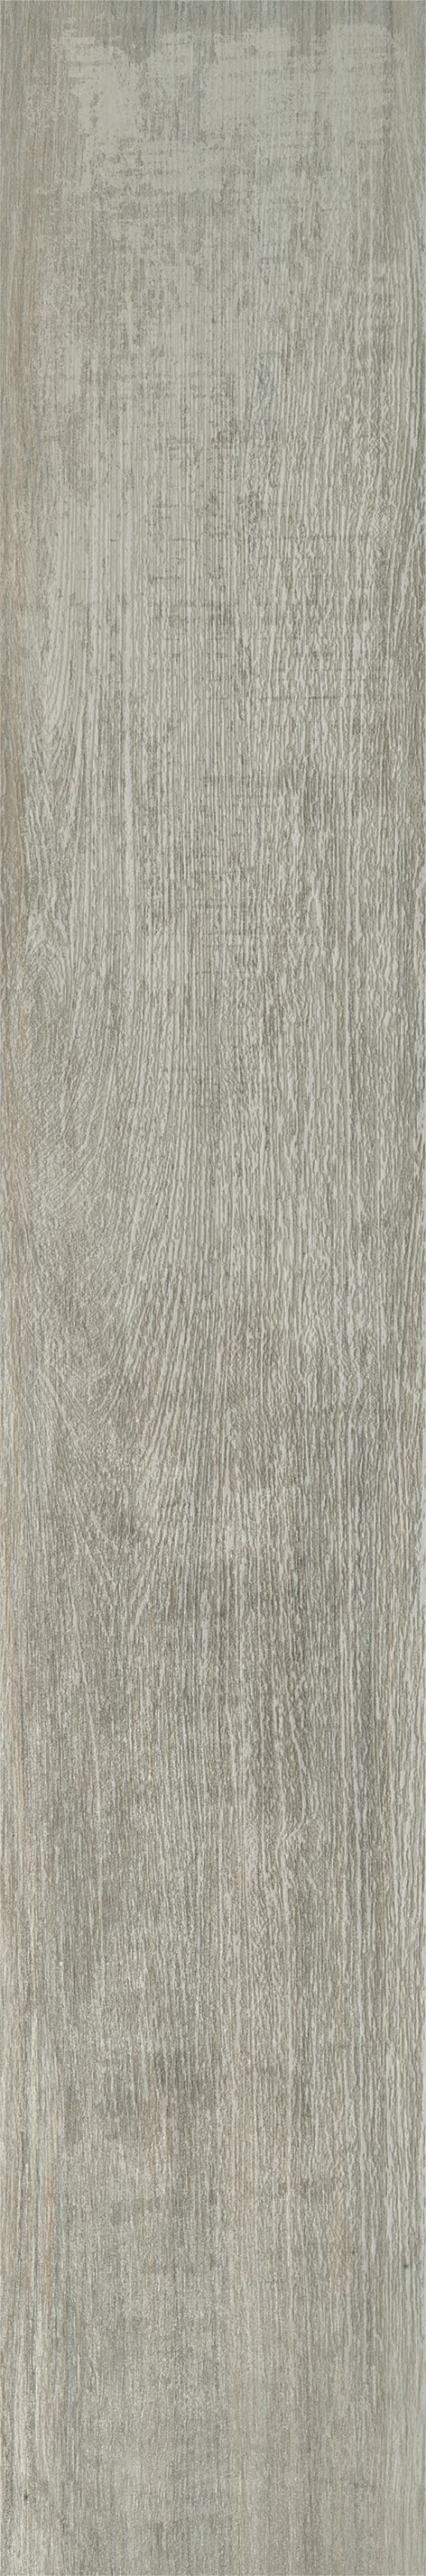 Плитка из керамогранита матовая Italon Грув 20x120 серый (610010001883) плитка из керамогранита матовая italon грув 20x120 коричневый 610010001884